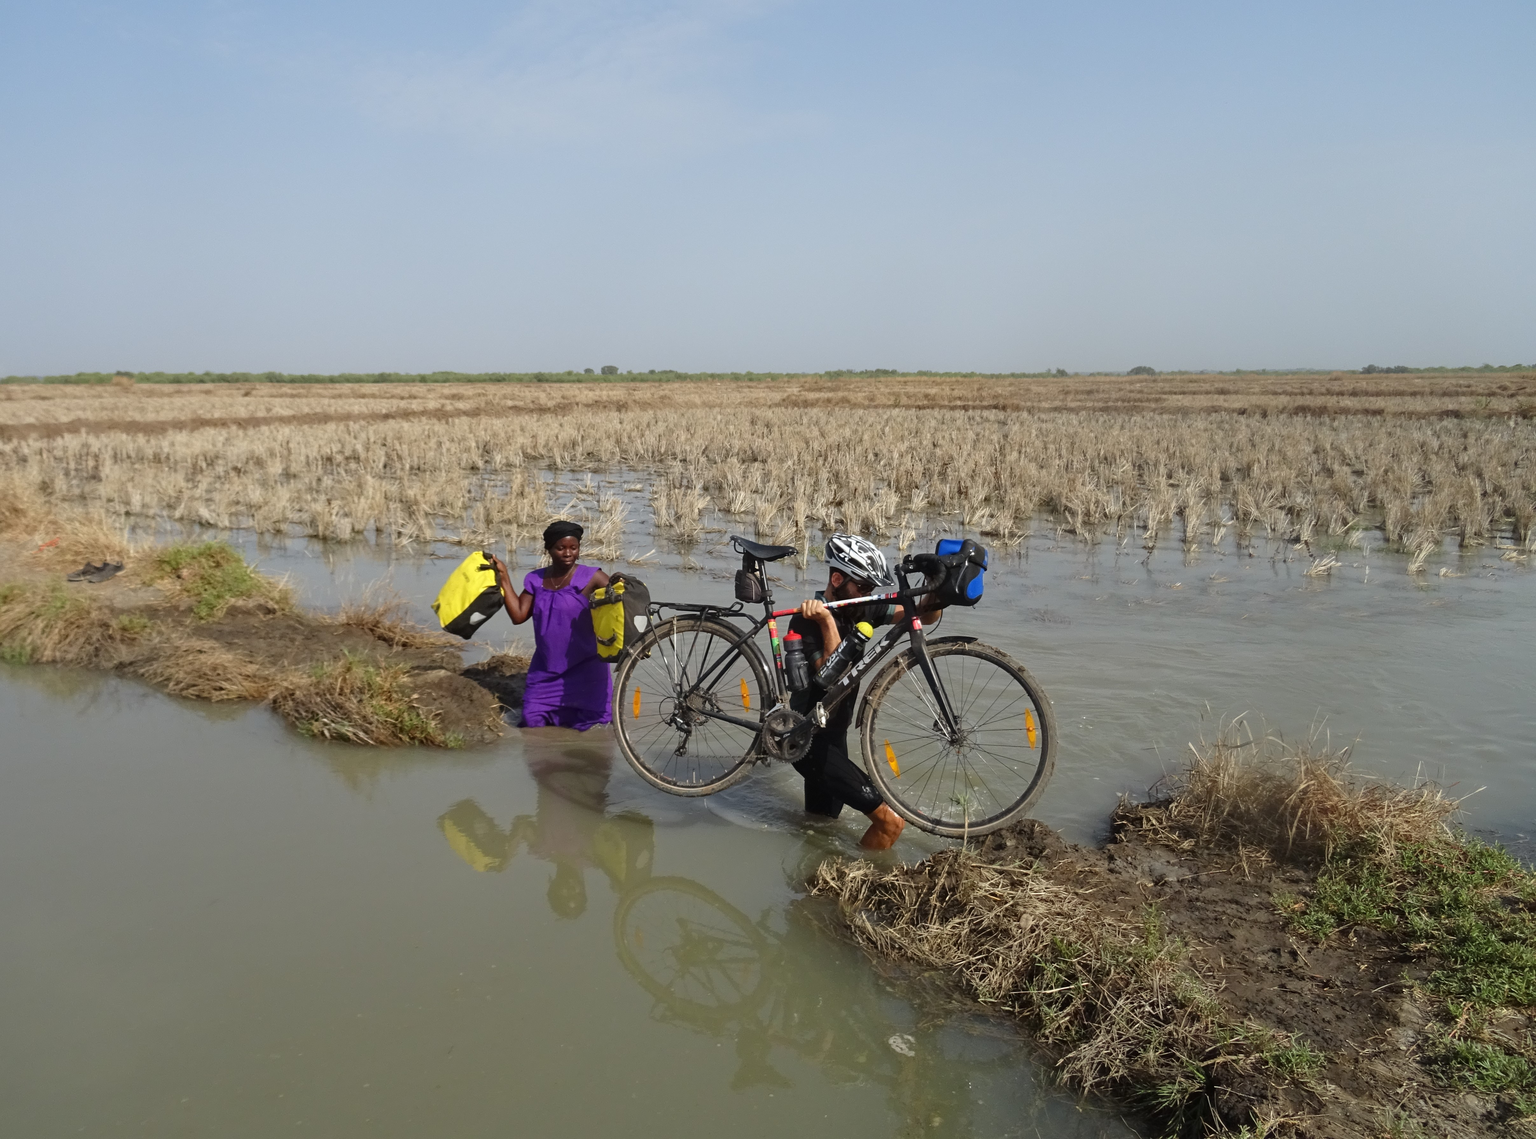 Bild 23
Guinea-Bissau (18.04.2019):
Einmal mehr nahmen wir eine Abkürzung in Guinea-Bissau um das Dorf Coboxanque zu erreichen.
Dafür mussten wir auf einer Piroge den Rio Cumbija queren und fanden uns ...